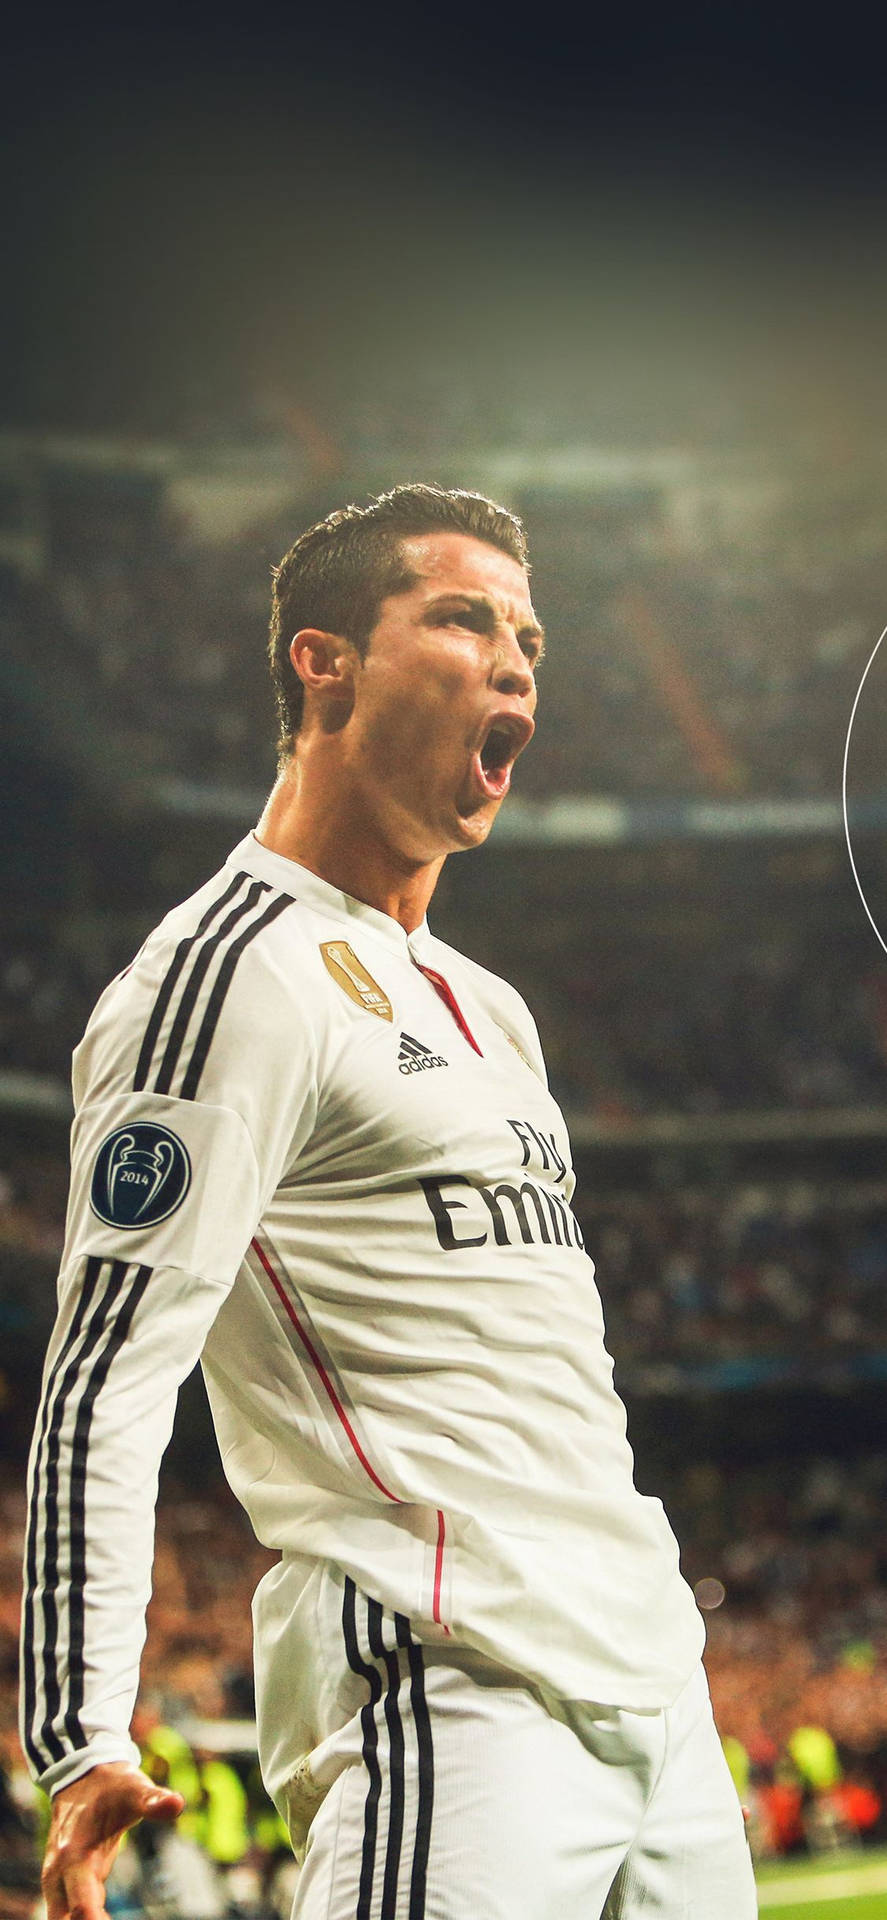 Upphettad Bakgrundsbild Av Cristiano Ronaldo För Iphone Tillgänglig För Nedladdning. Wallpaper